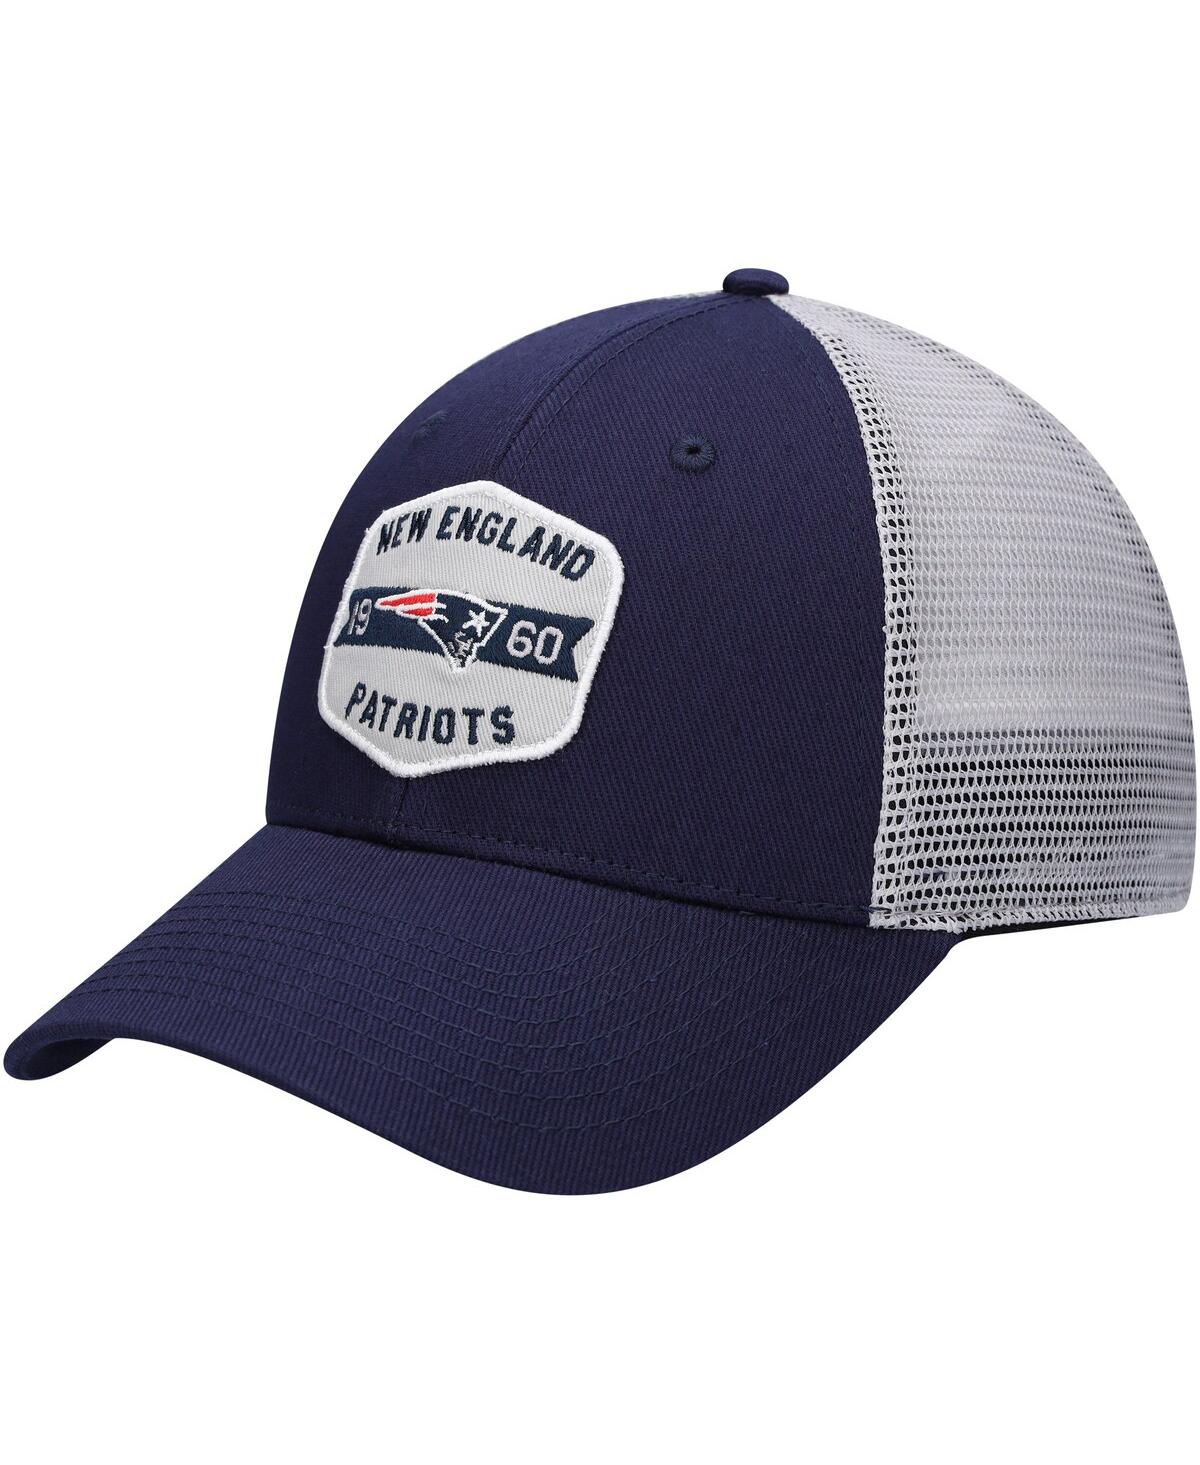 Men's Navy, White New England Patriots Gannon Snapback Hat - Navy, White